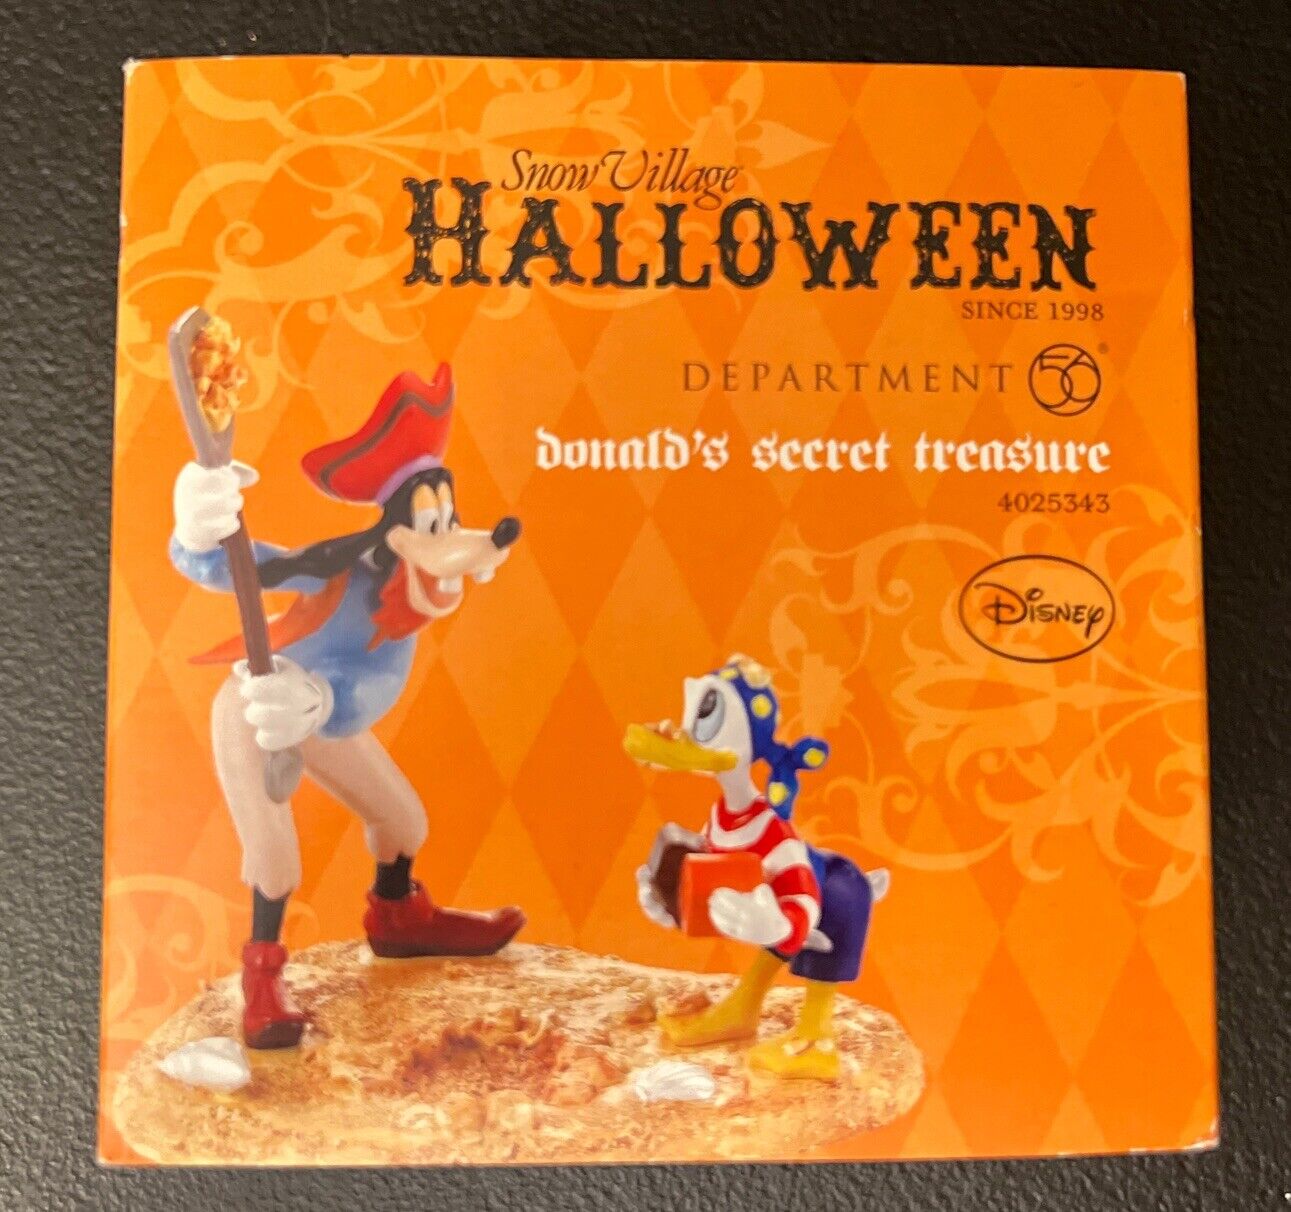 Dept 56 DONALD\'S SECRET TREASURE 4025343 Disney Goofy Halloween DEPARTMENT New